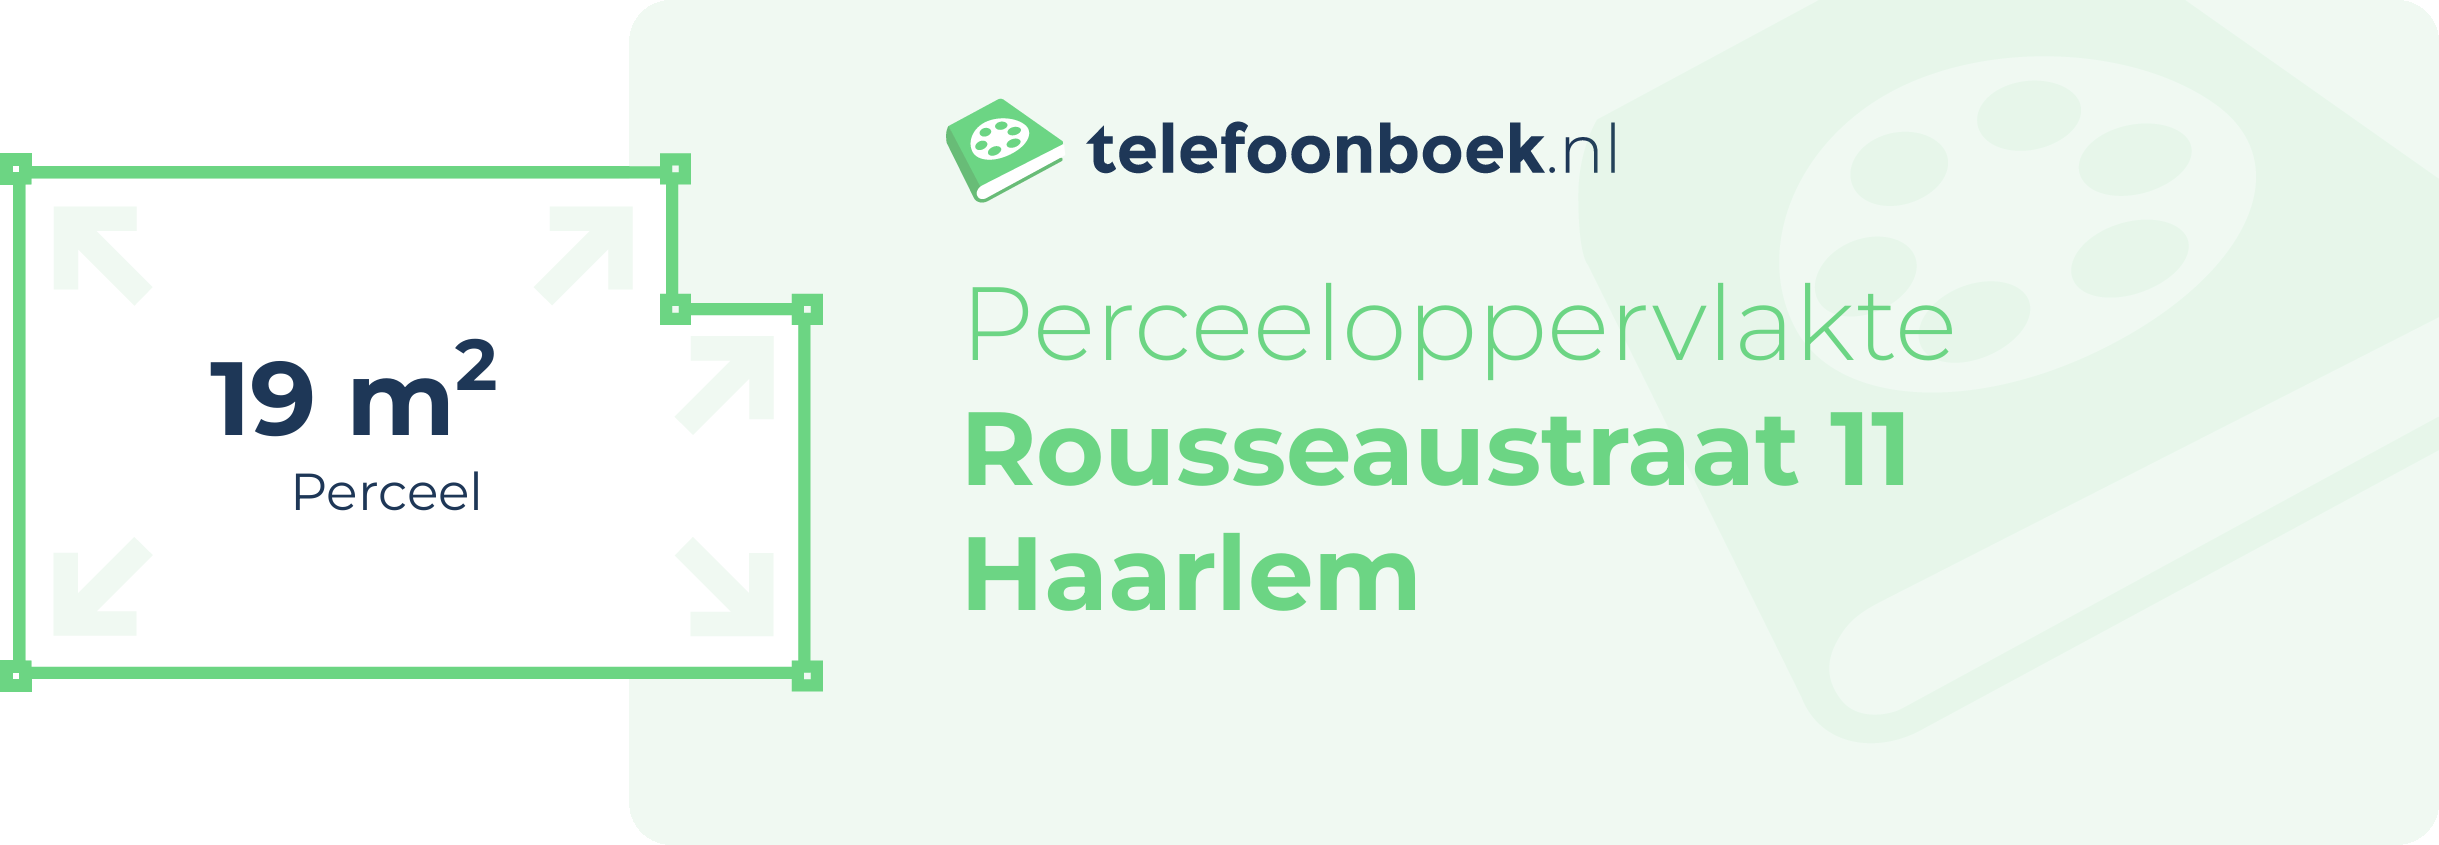 Perceeloppervlakte Rousseaustraat 11 Haarlem